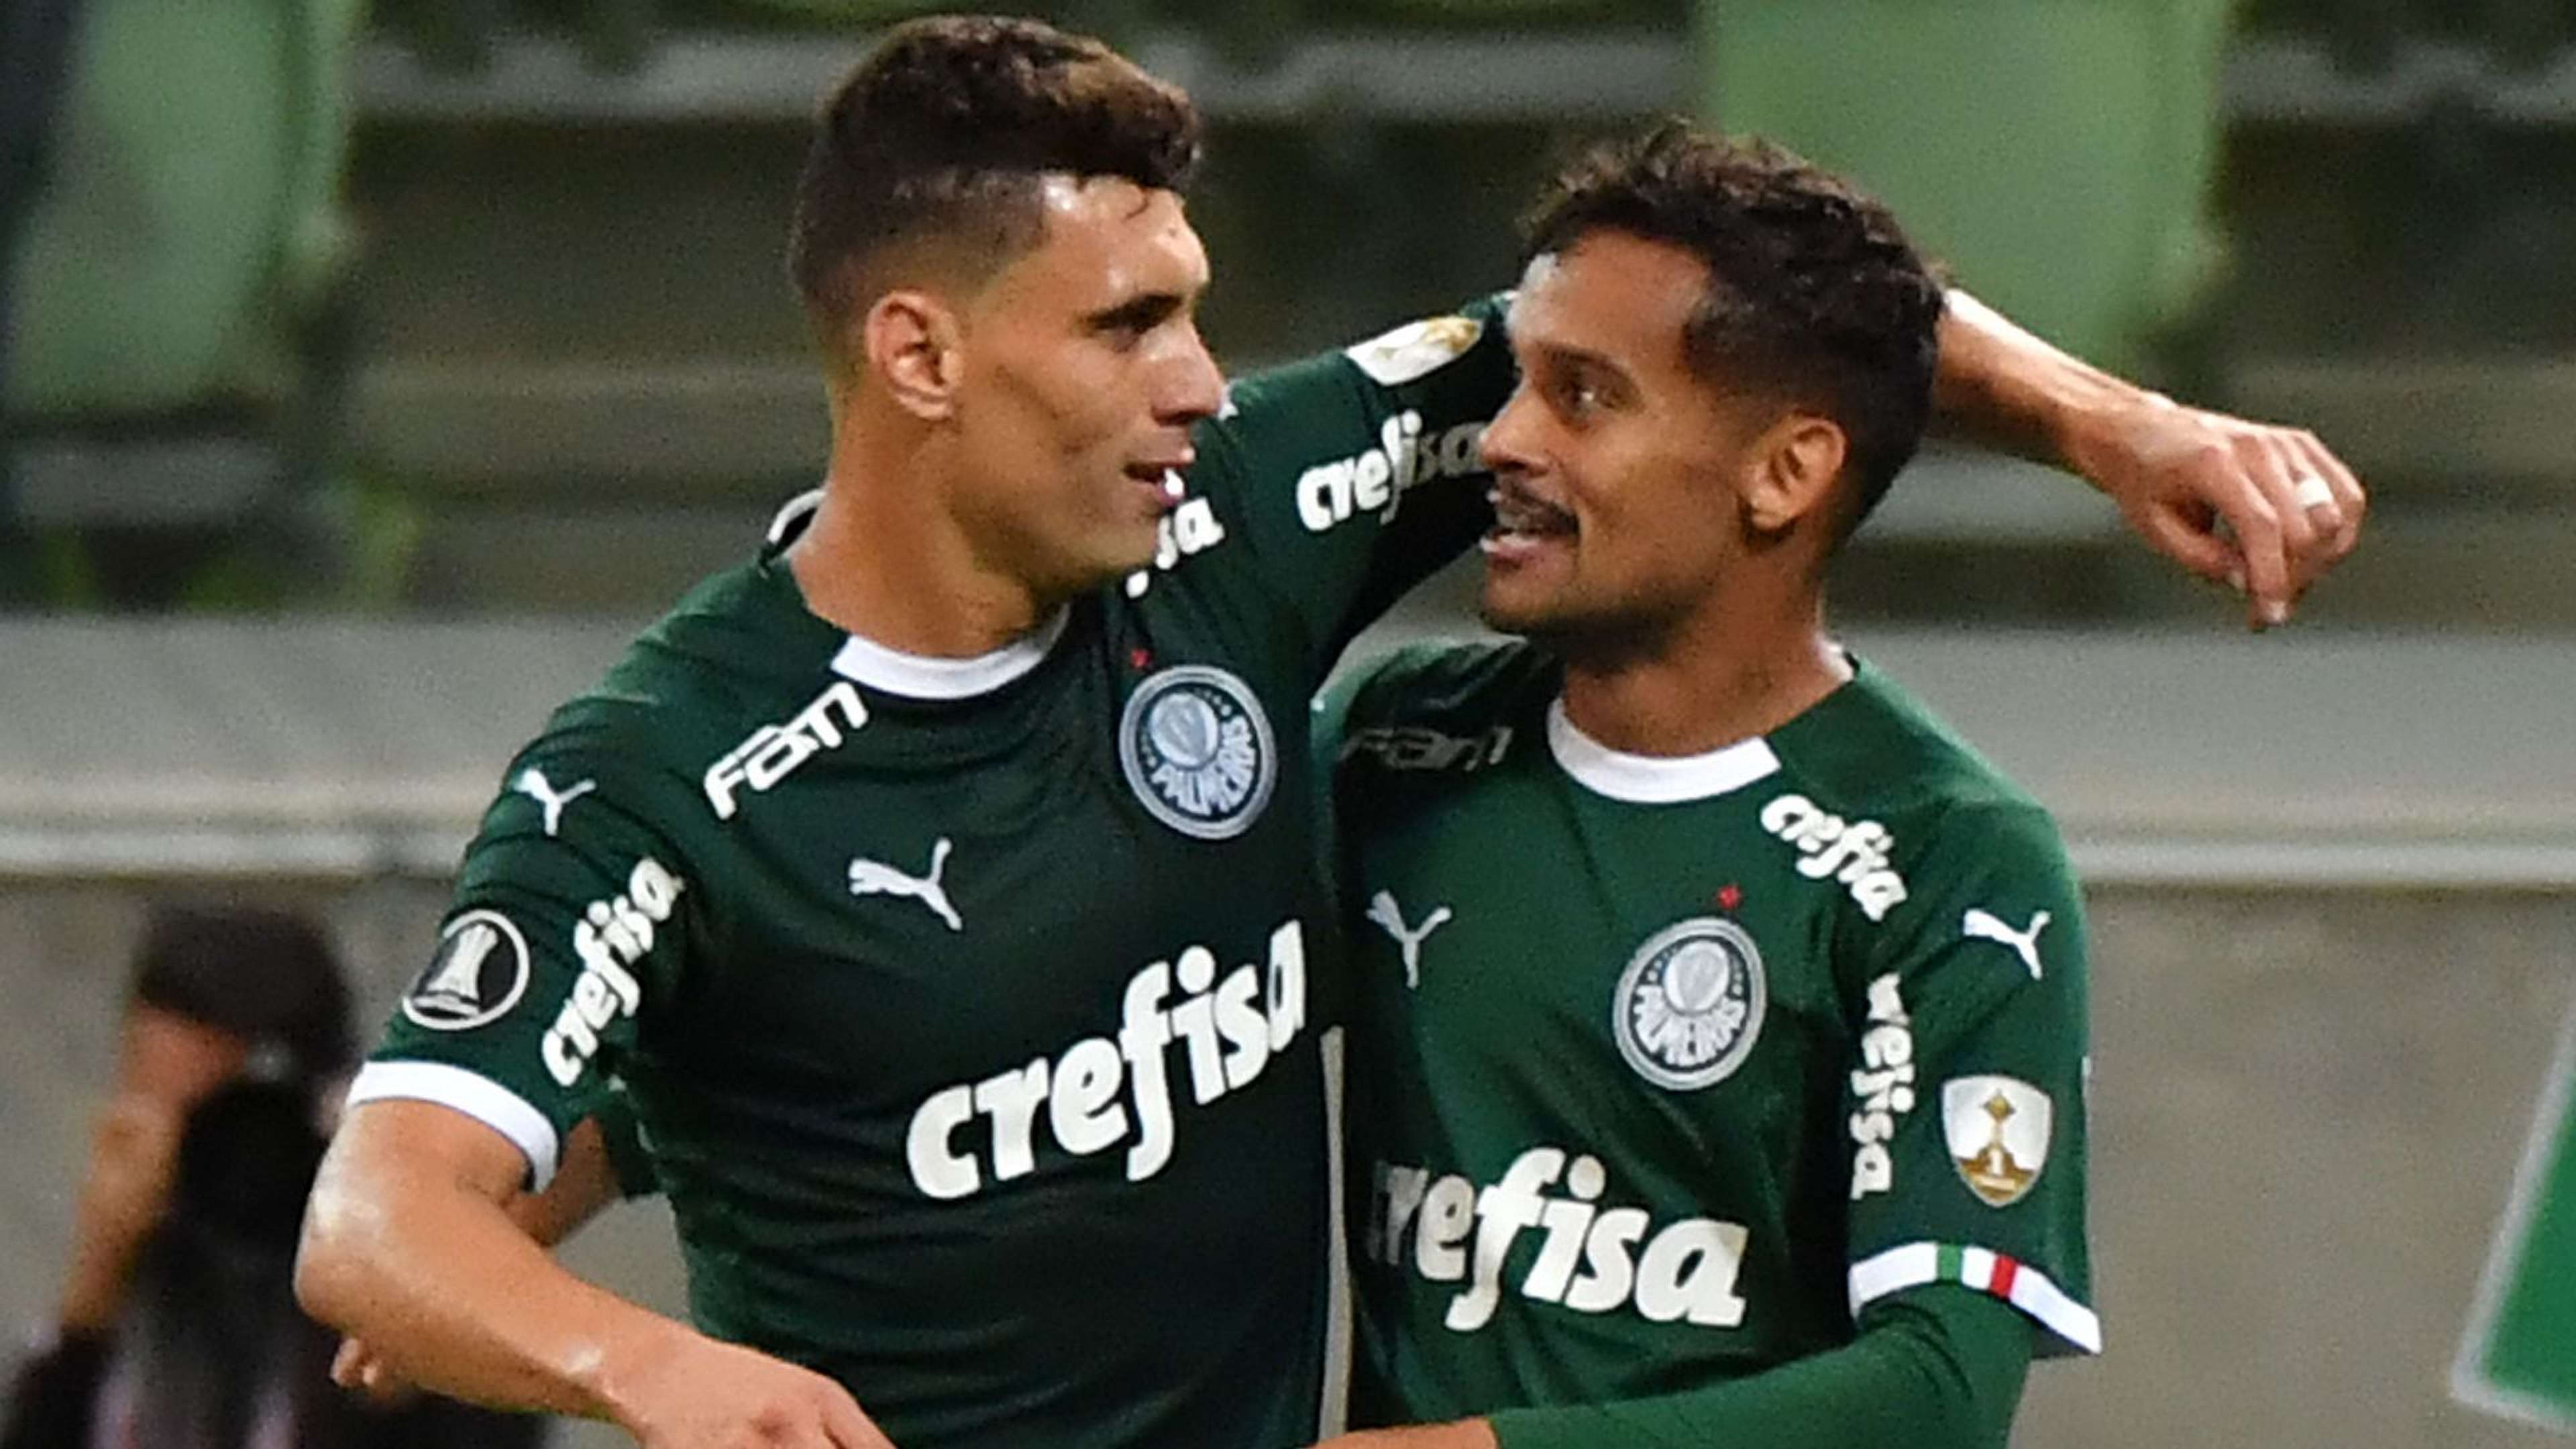 Moisés Gustavo Scarpa Palmeiras San Lorenzo Libertadores 08052019